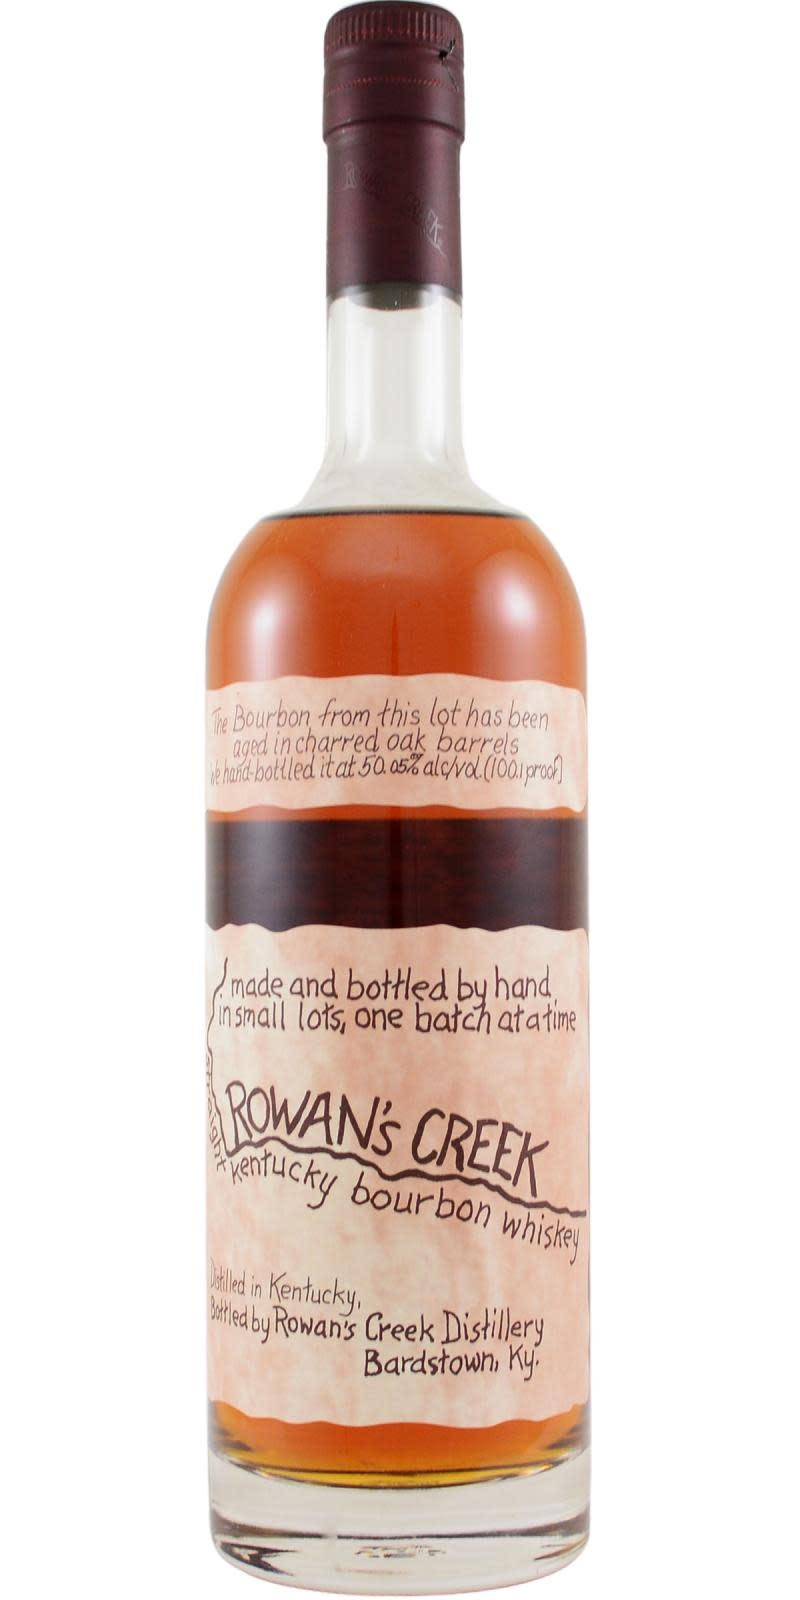 Rowan's Creek Straight Kentucky Bourbon  Batch 18-47